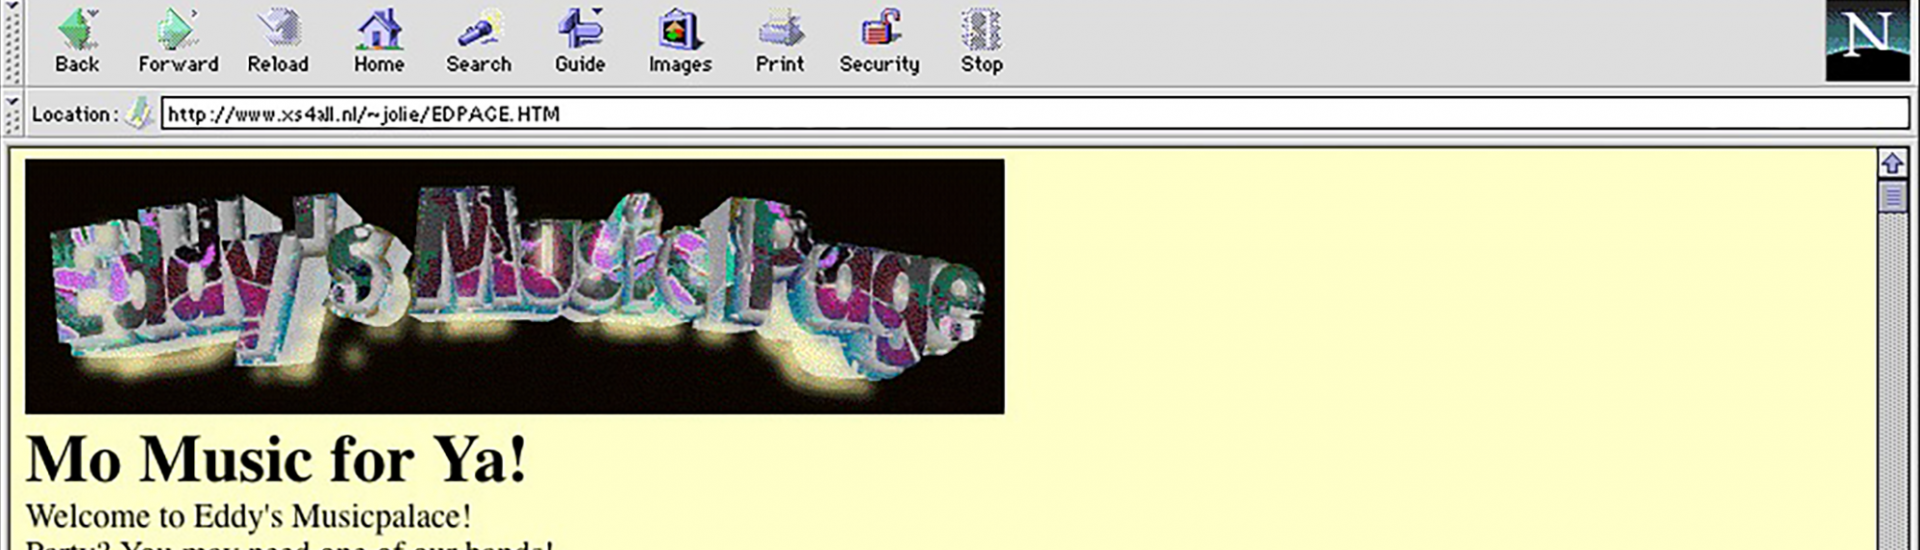 Eerste homepage, Jolie, 1995.